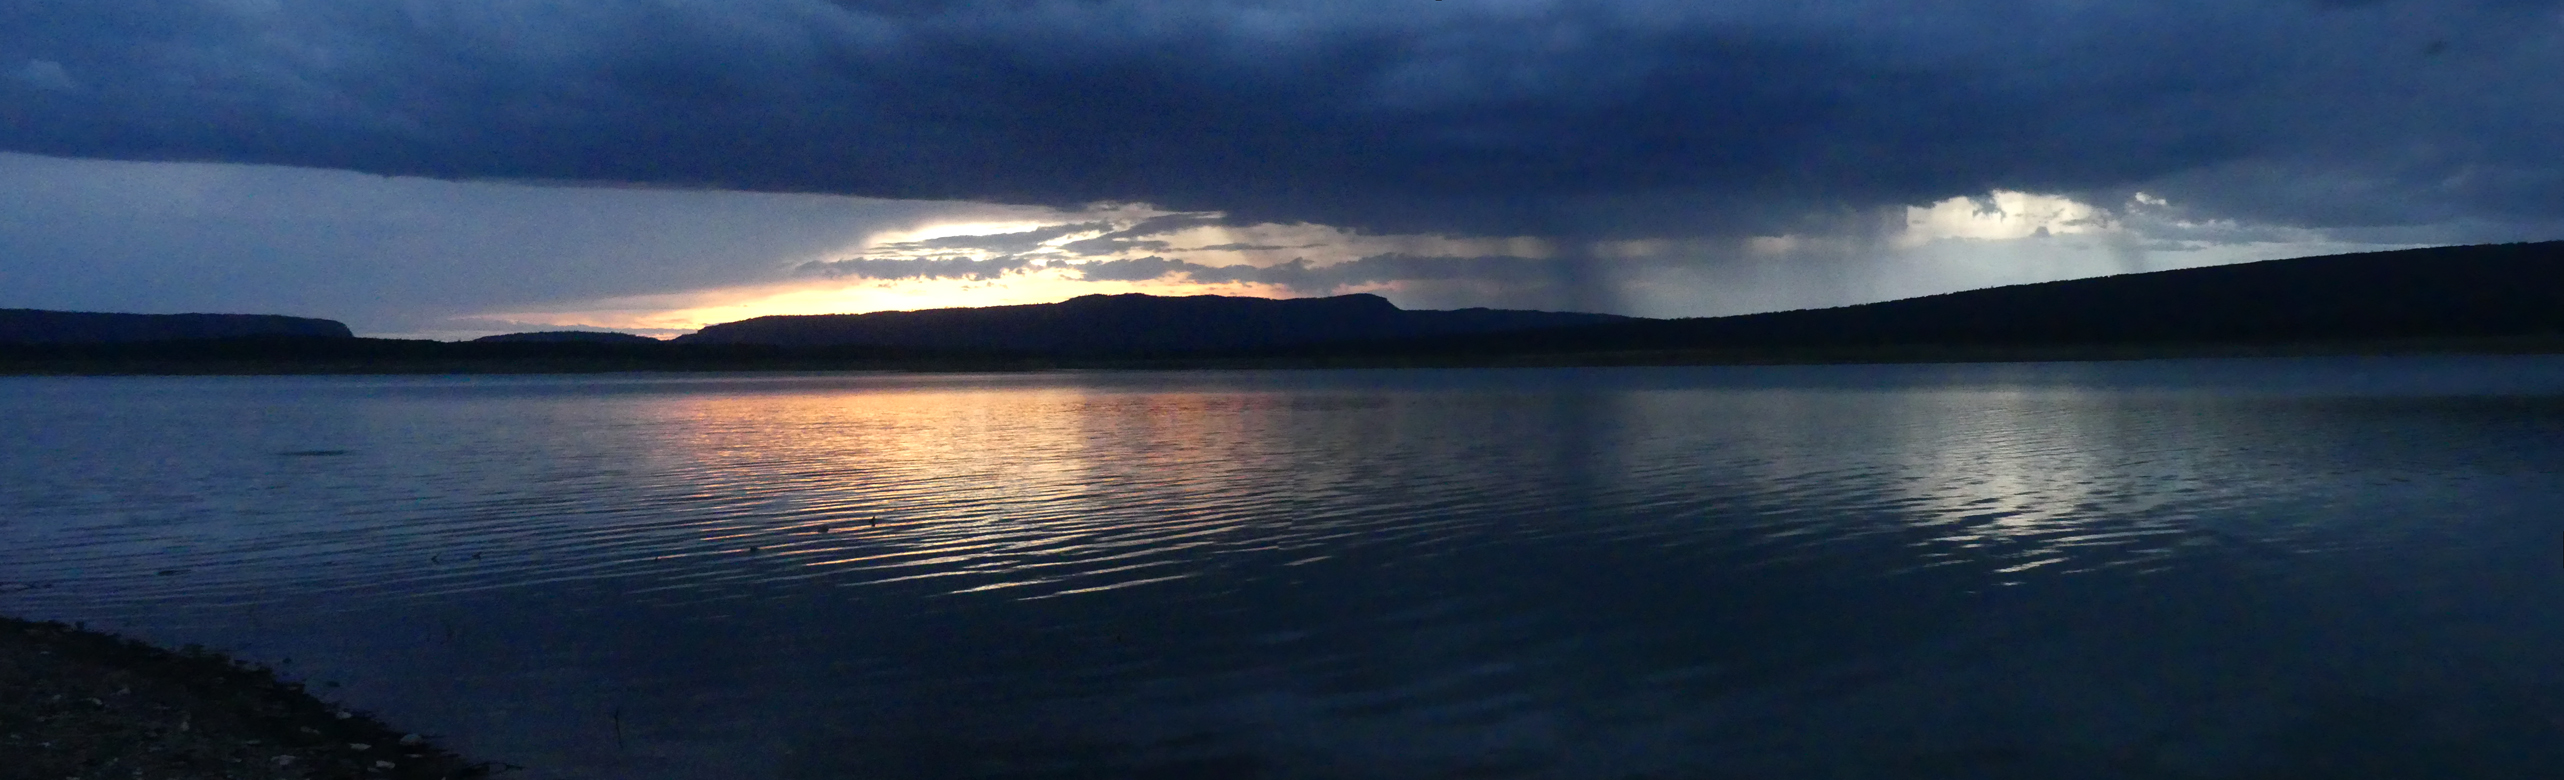 Heron Lake at sunset